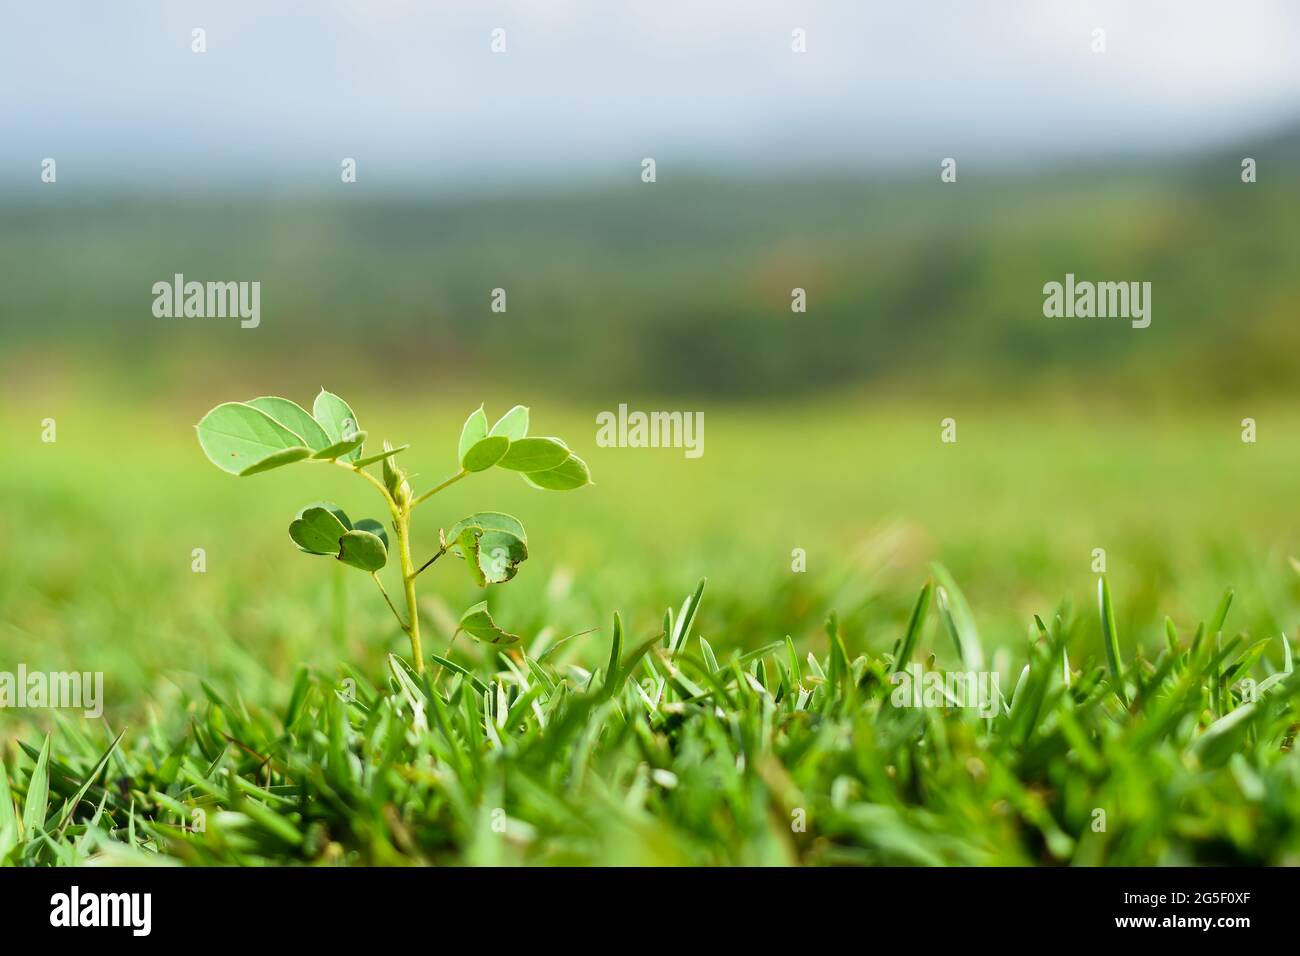 Terreno verdeggiante coperto di erba e una pianta che cresce in erba conosciuta come falce senna durante la stagione piovosa che è nutriente nella dieta. Usato selettivo f Foto Stock